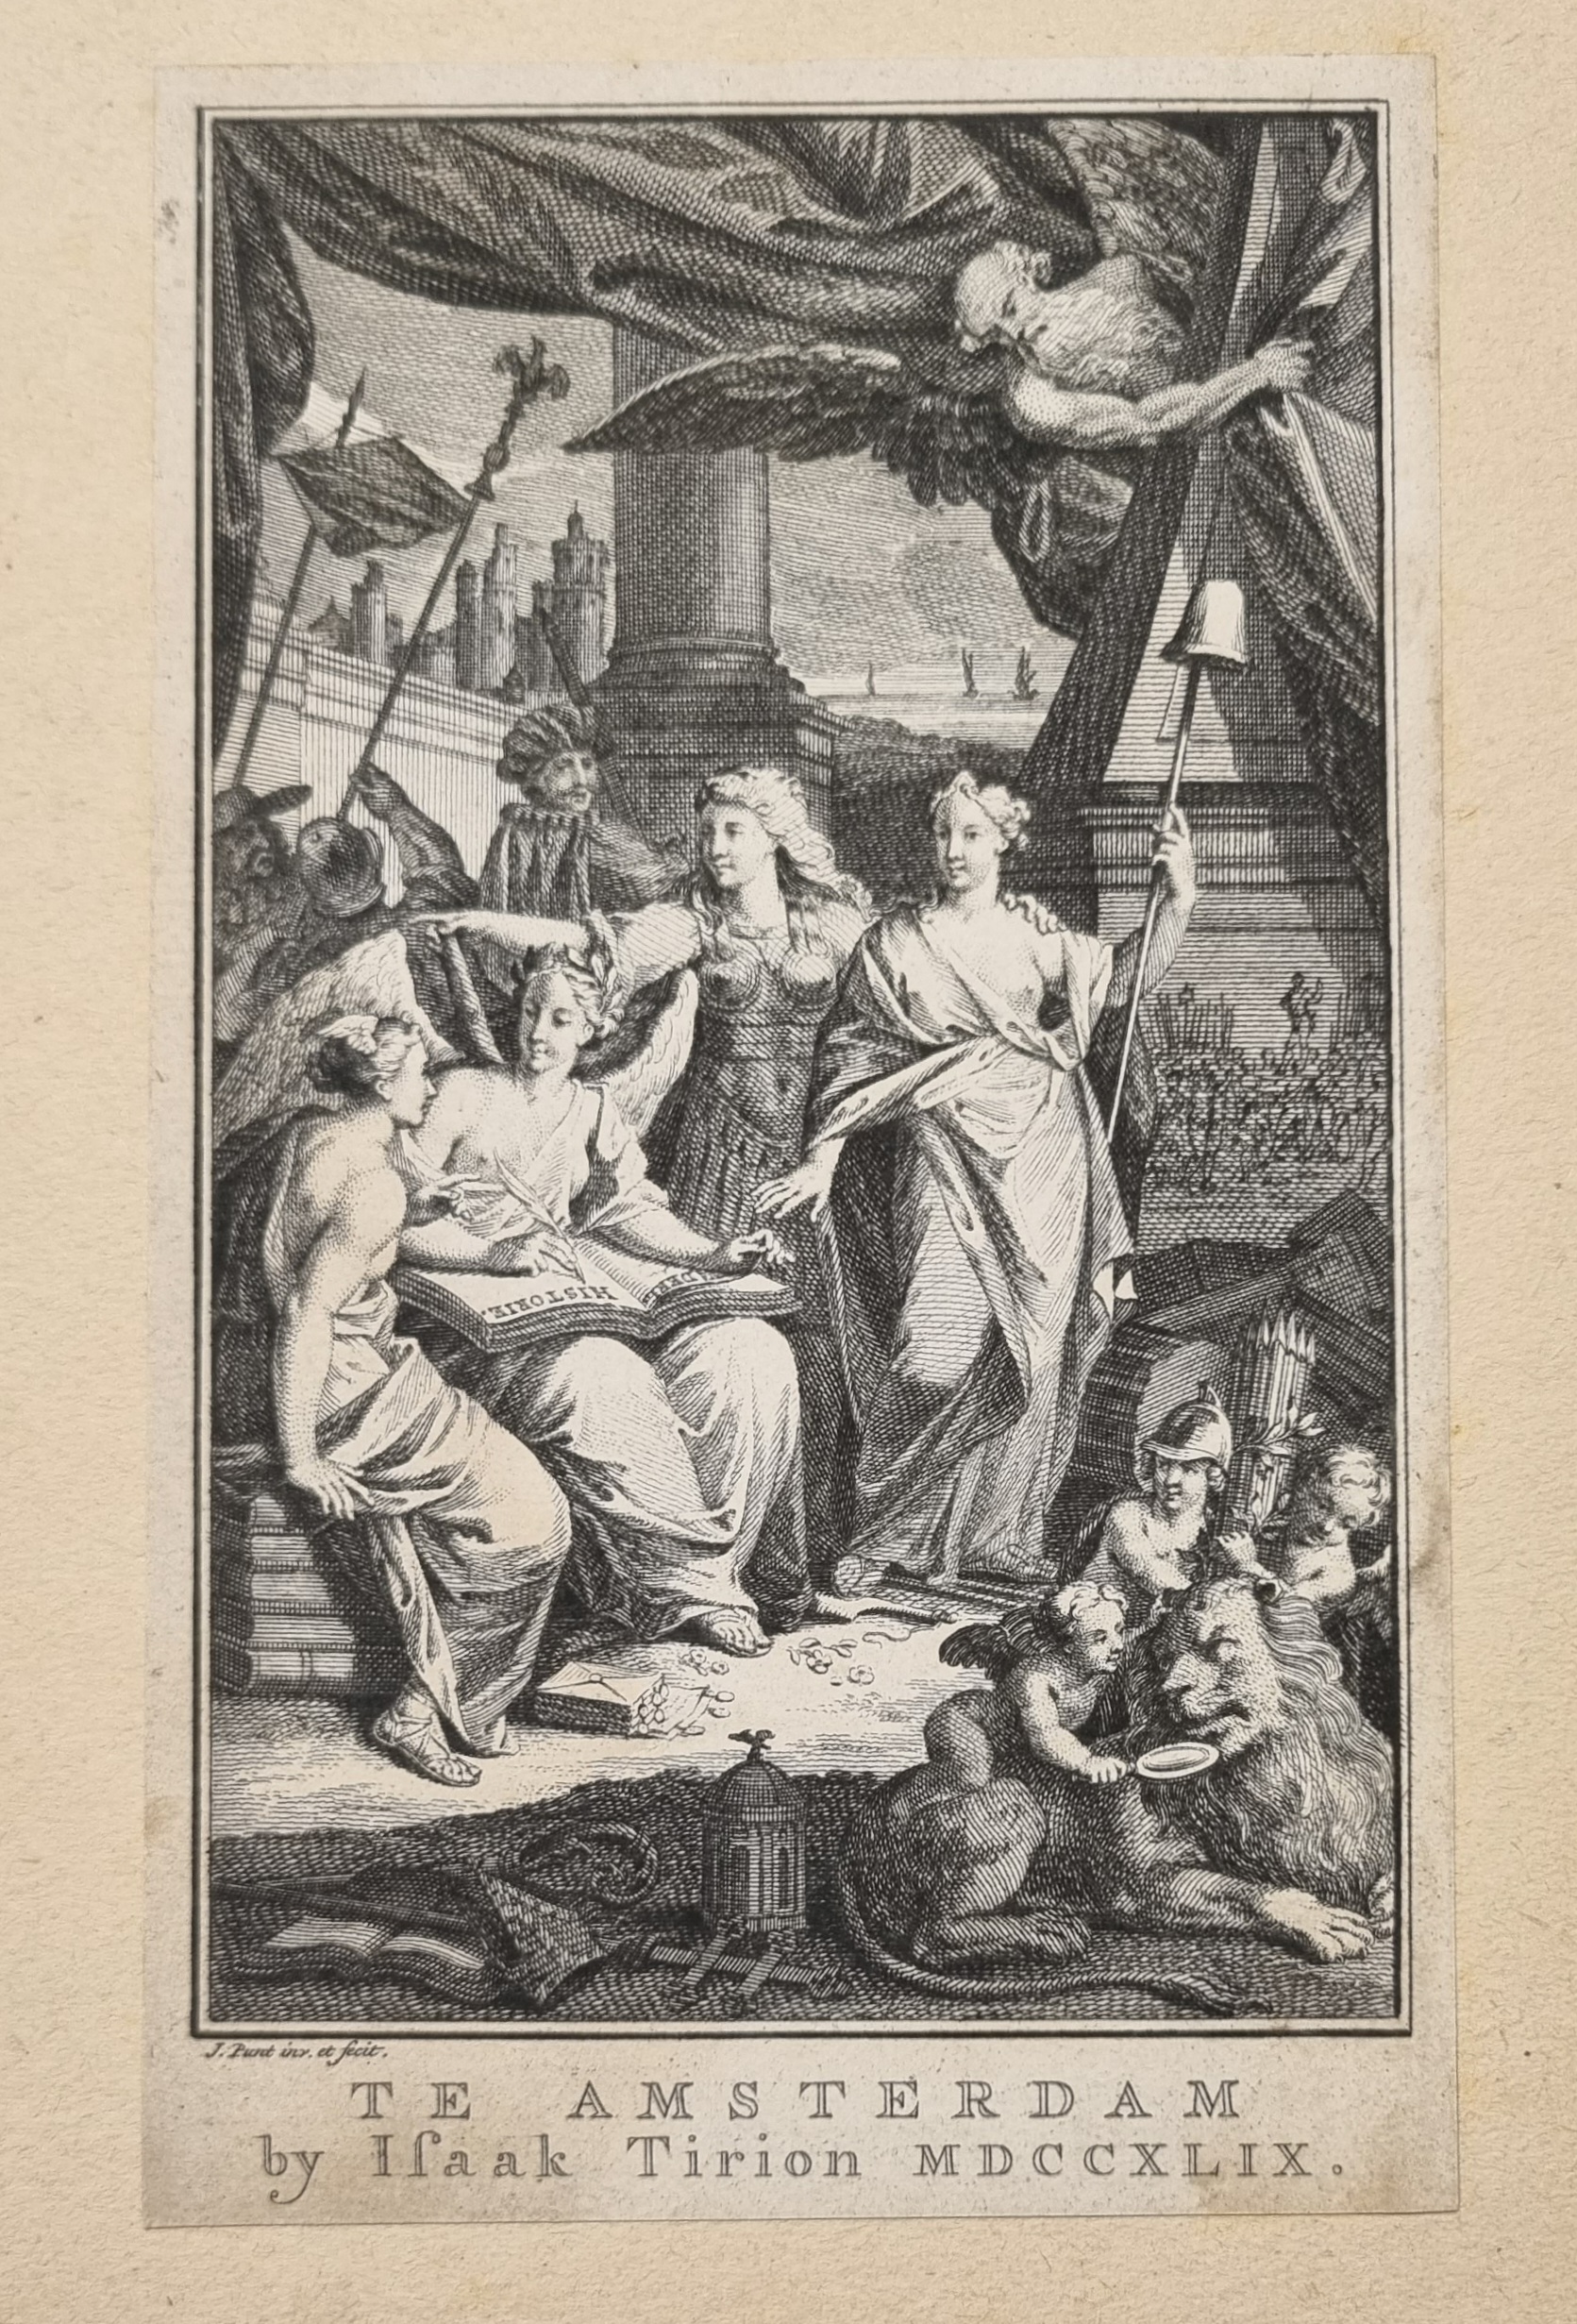 [Antique title page, 1749] Vaderlandsche historie / Allegorie op het schrijven van geschiedenis, published 1749, 1 p.